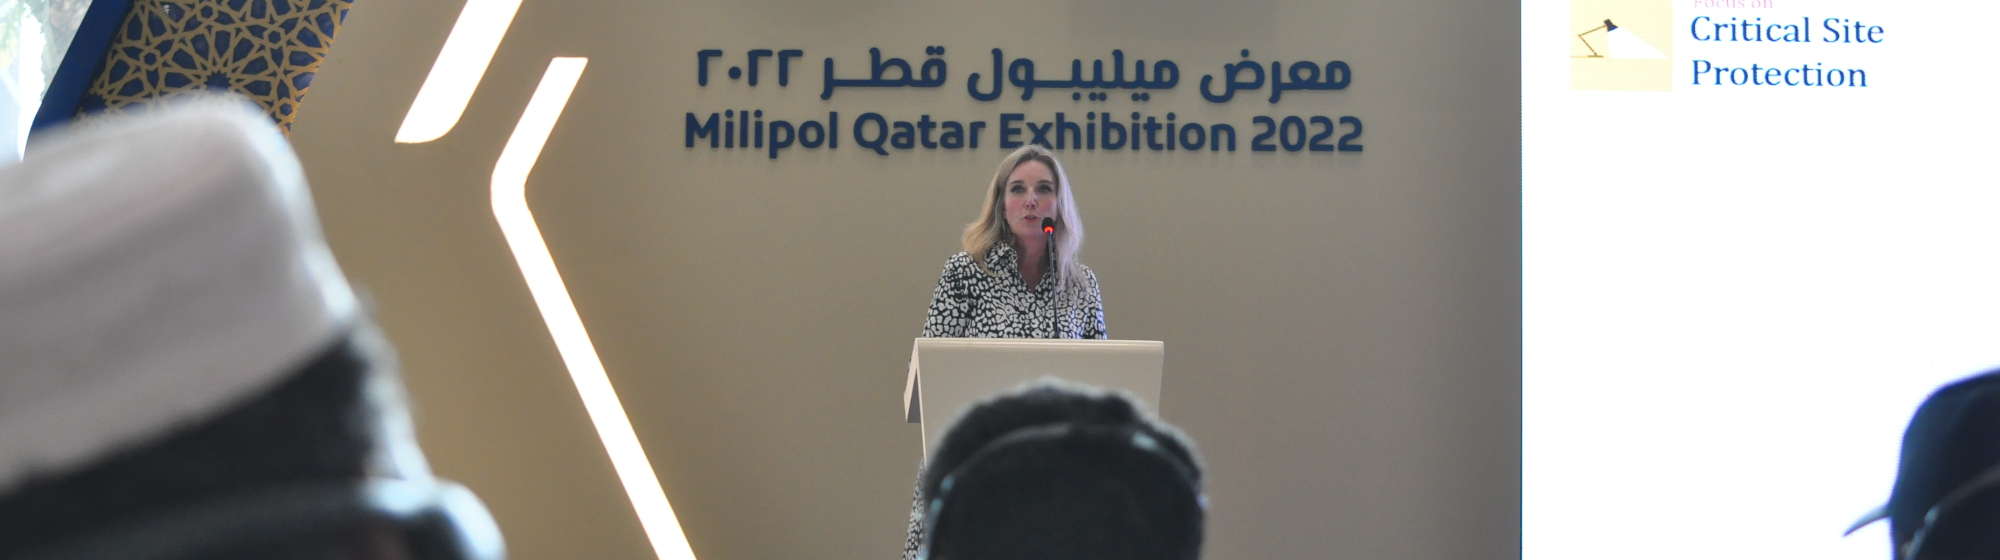 An international speaker delivering a conference at Milipol Qatar